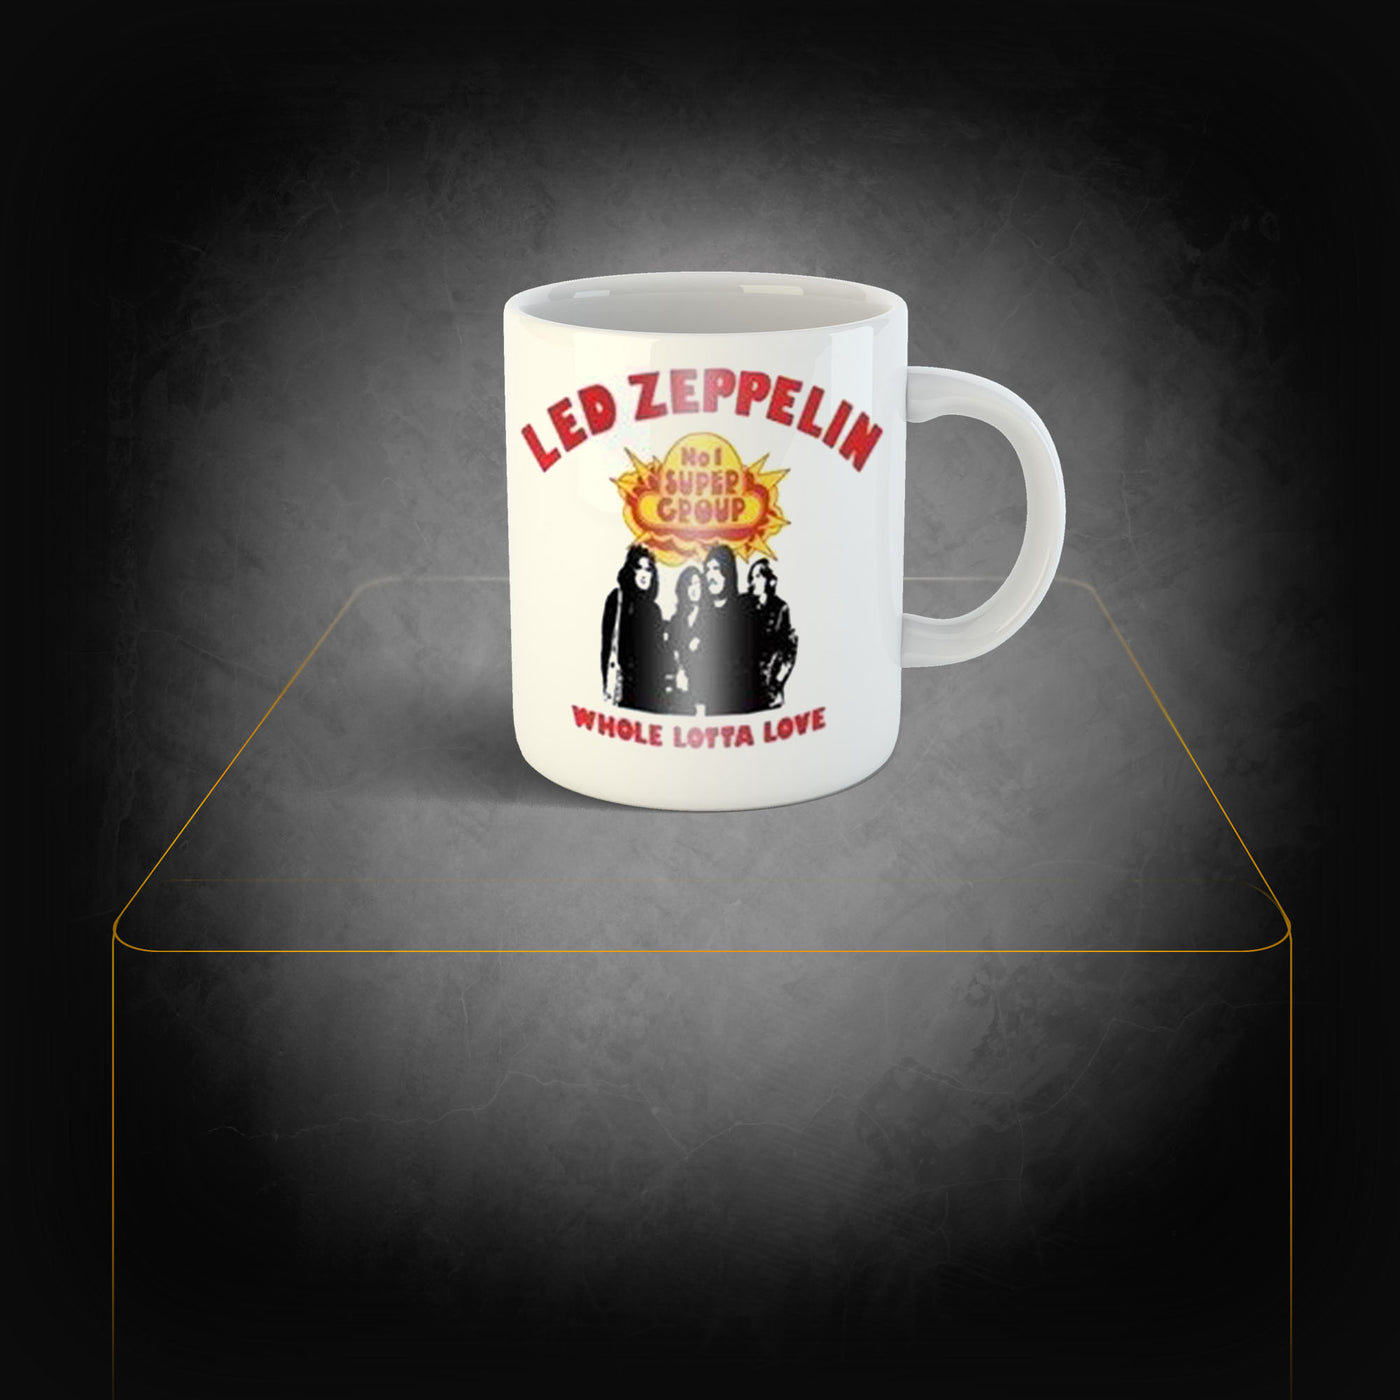 Mug Led Zeppelin